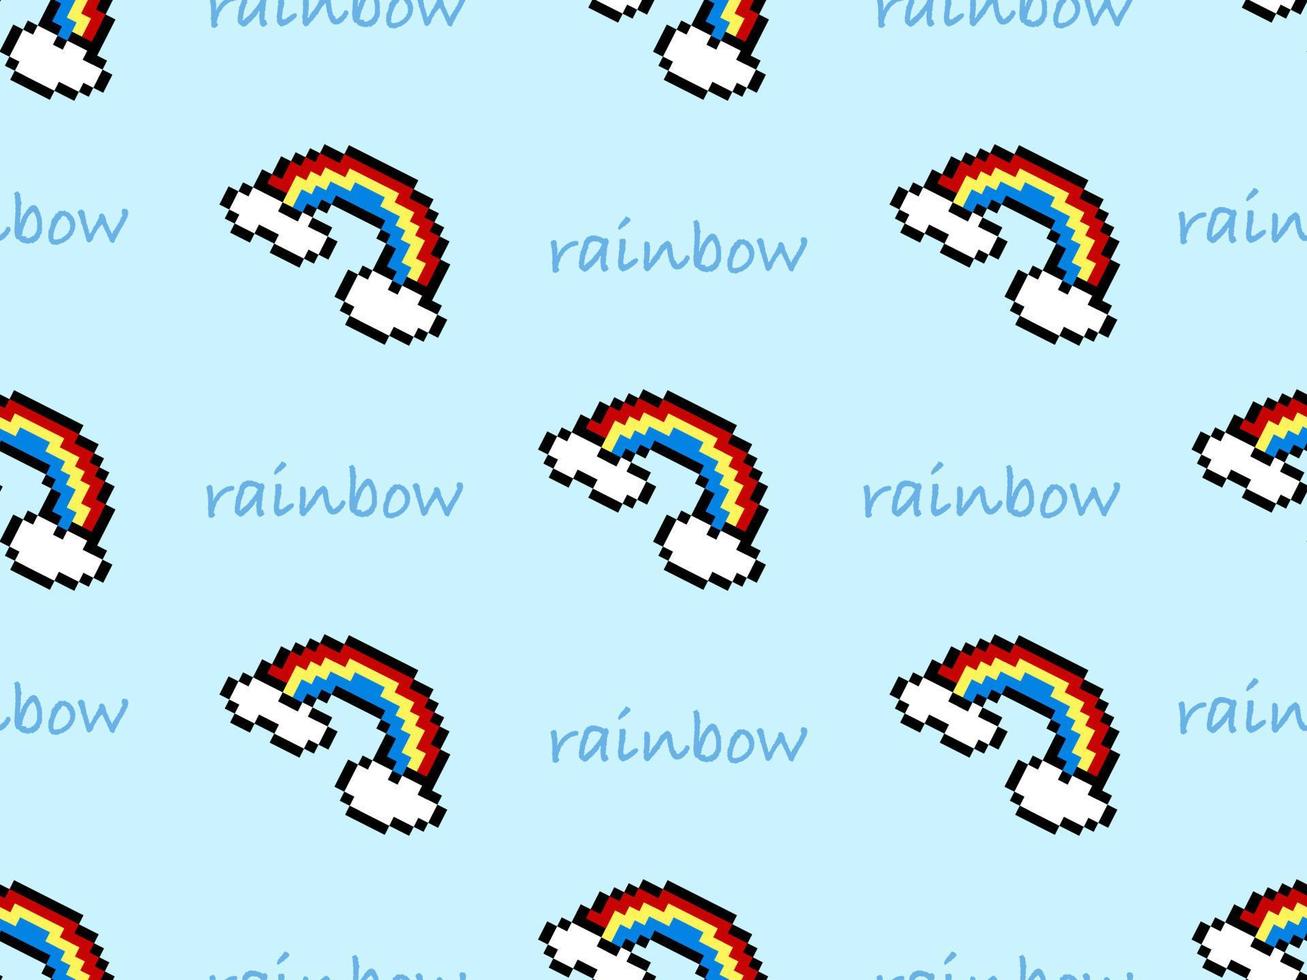 regenboog stripfiguur naadloos patroon op blauwe background.pixel stijl vector